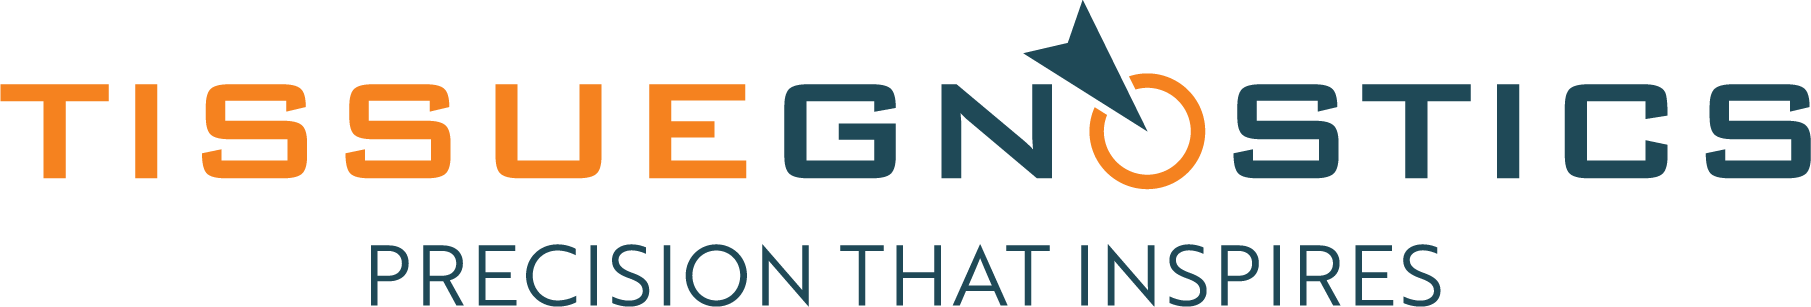 TG logo 300 ppi.png